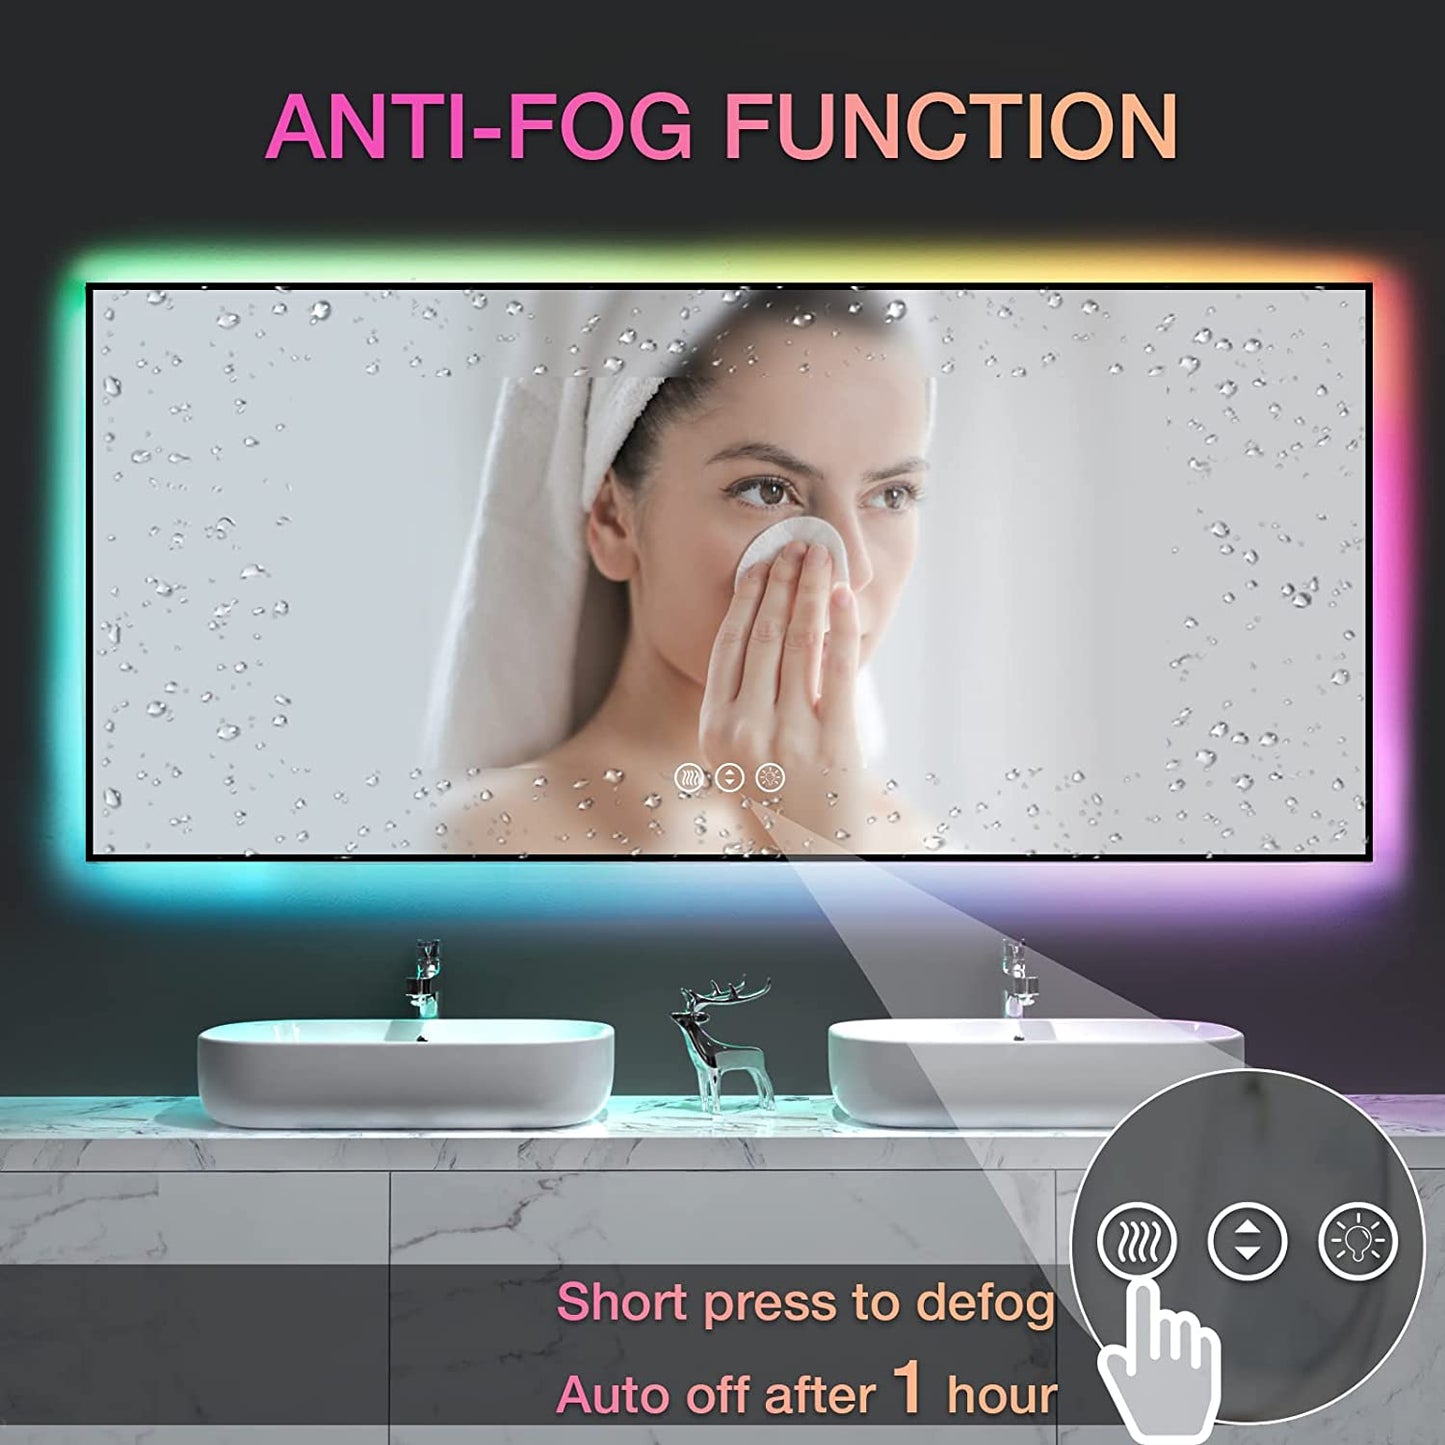 Amorho LED Bathroom Mirror with RGB Backlit, 72"x32"